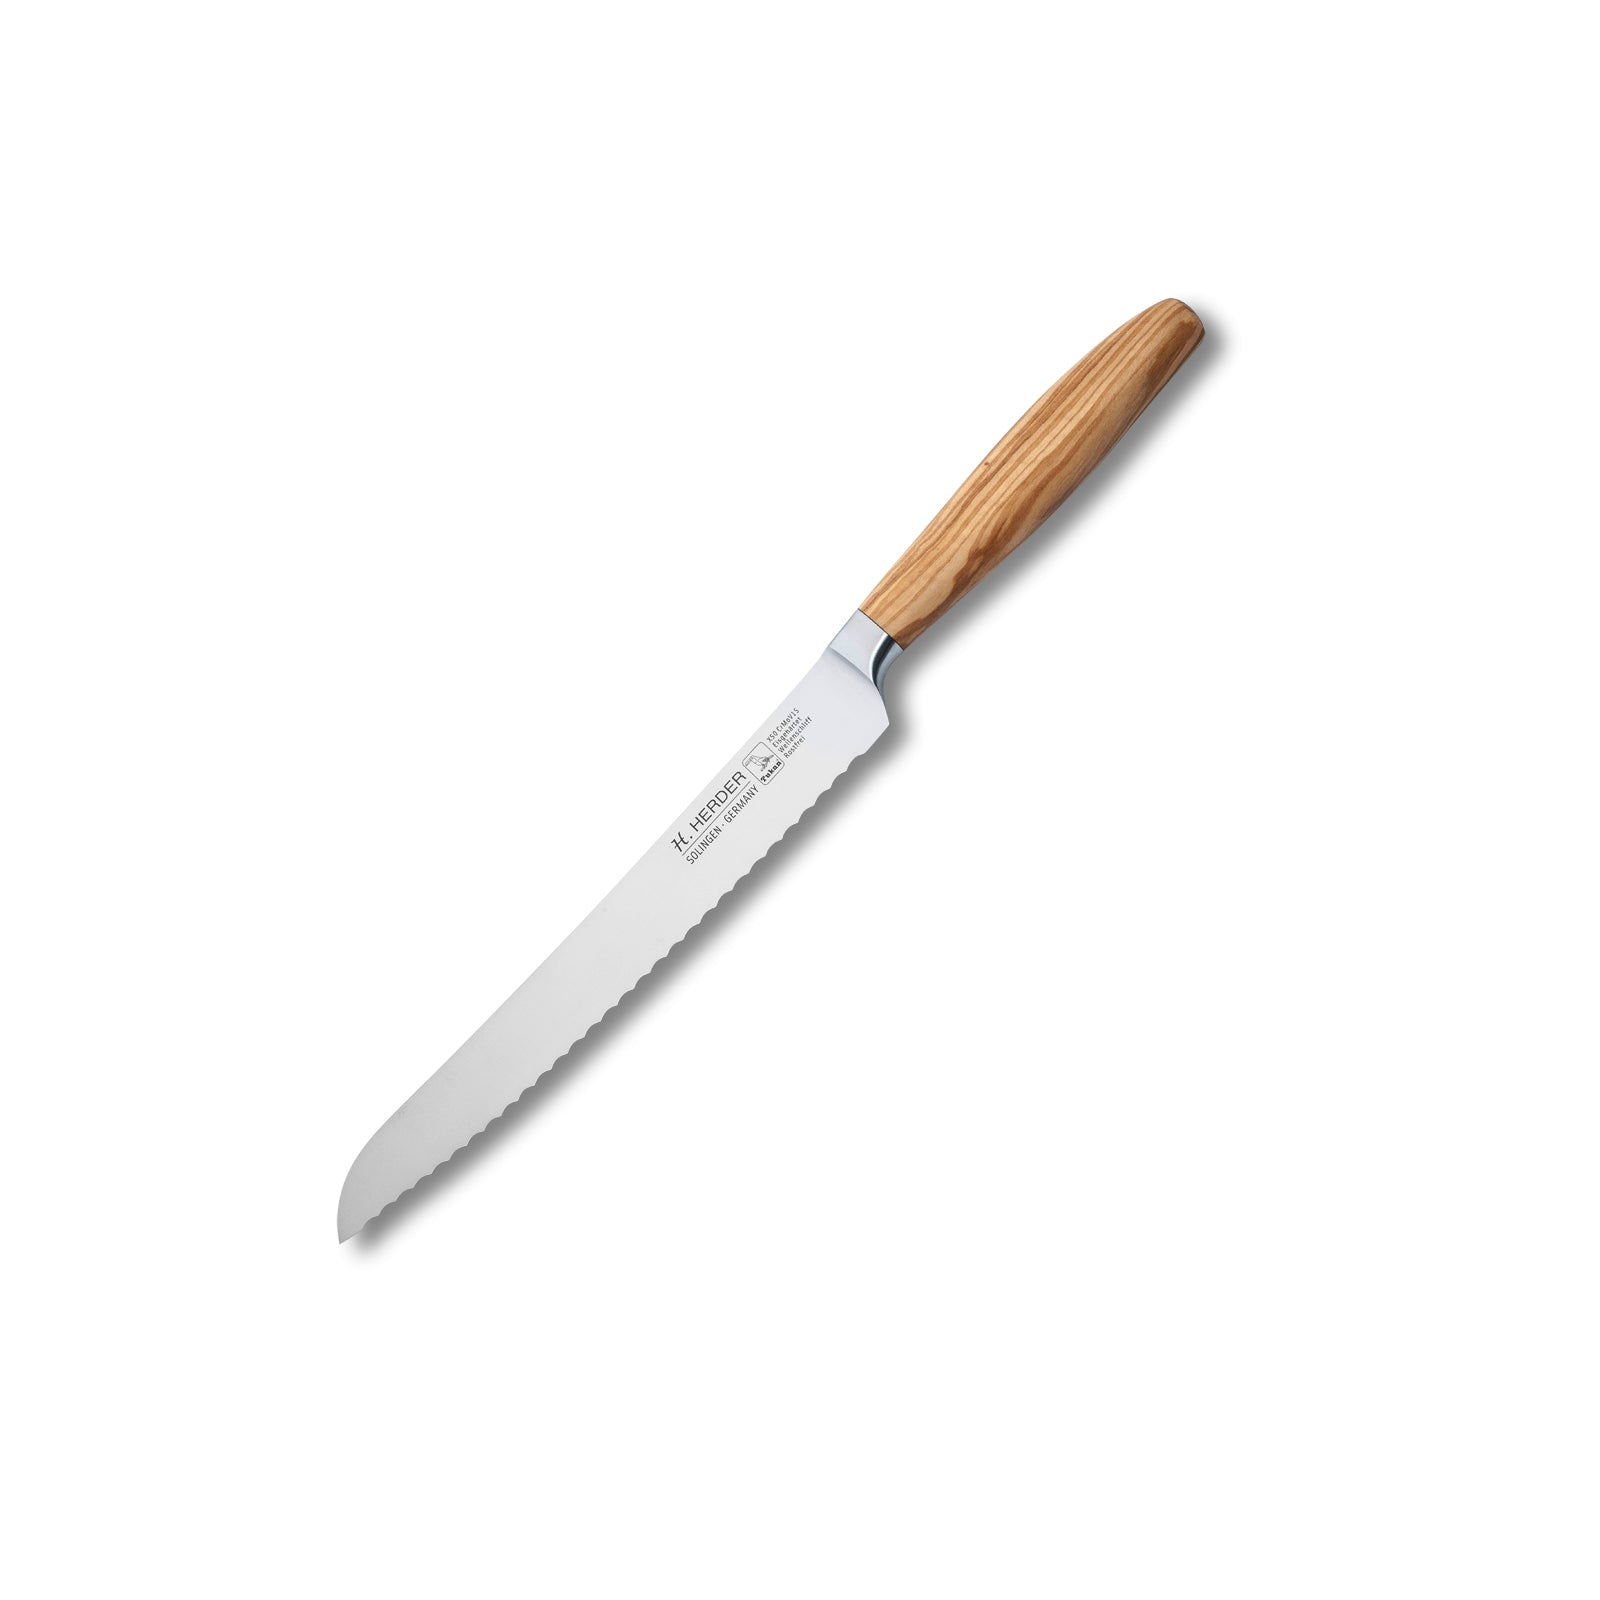 Couteau à pain Eterno, bois d'olivier, longueur de lame 22cm, forgé, dentelé